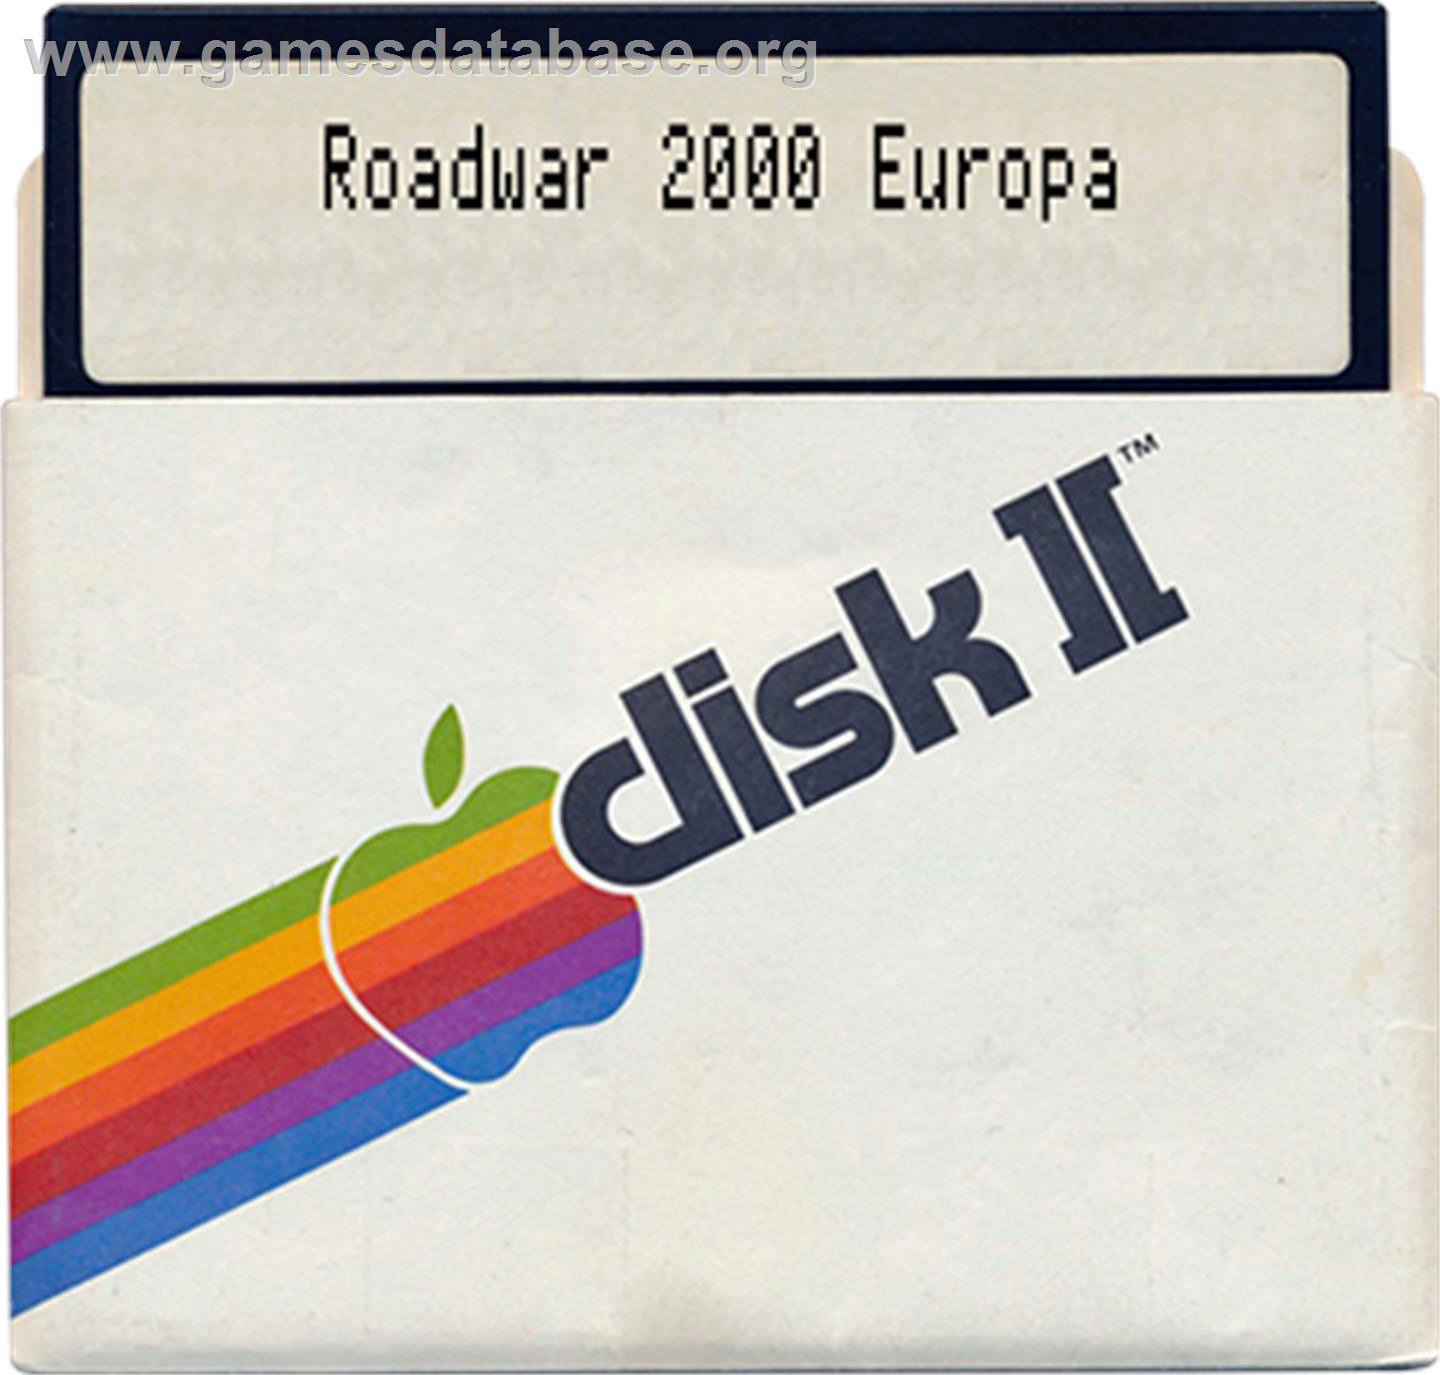 Roadwar Europa - Apple II - Artwork - Disc